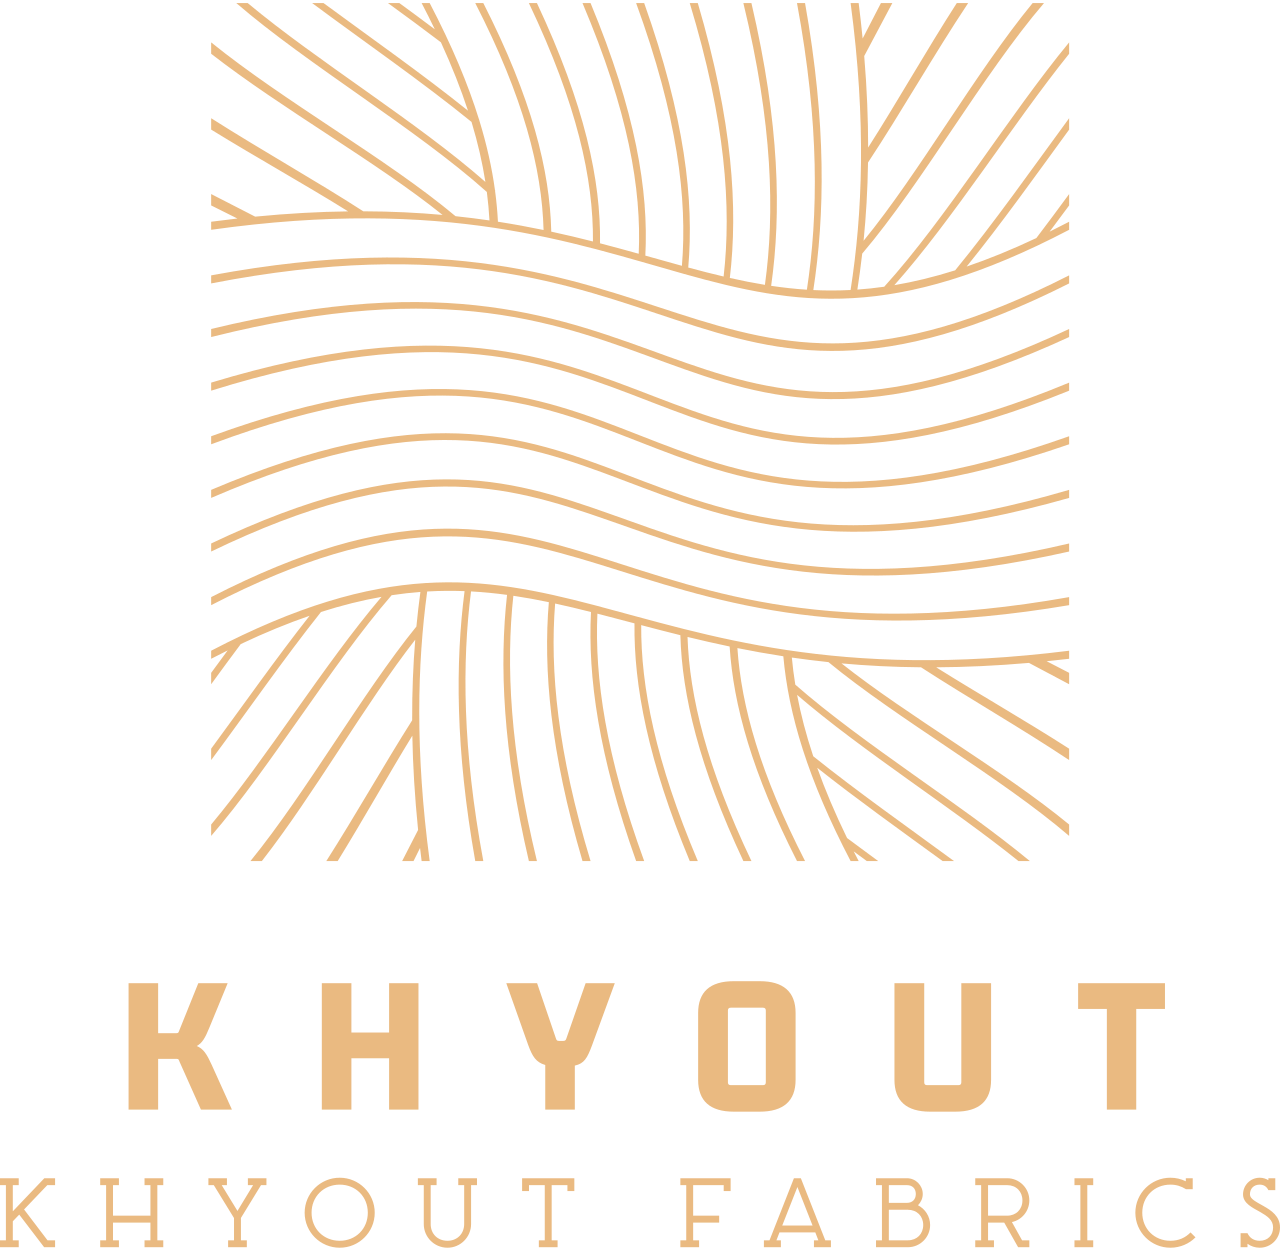 khyout's logo